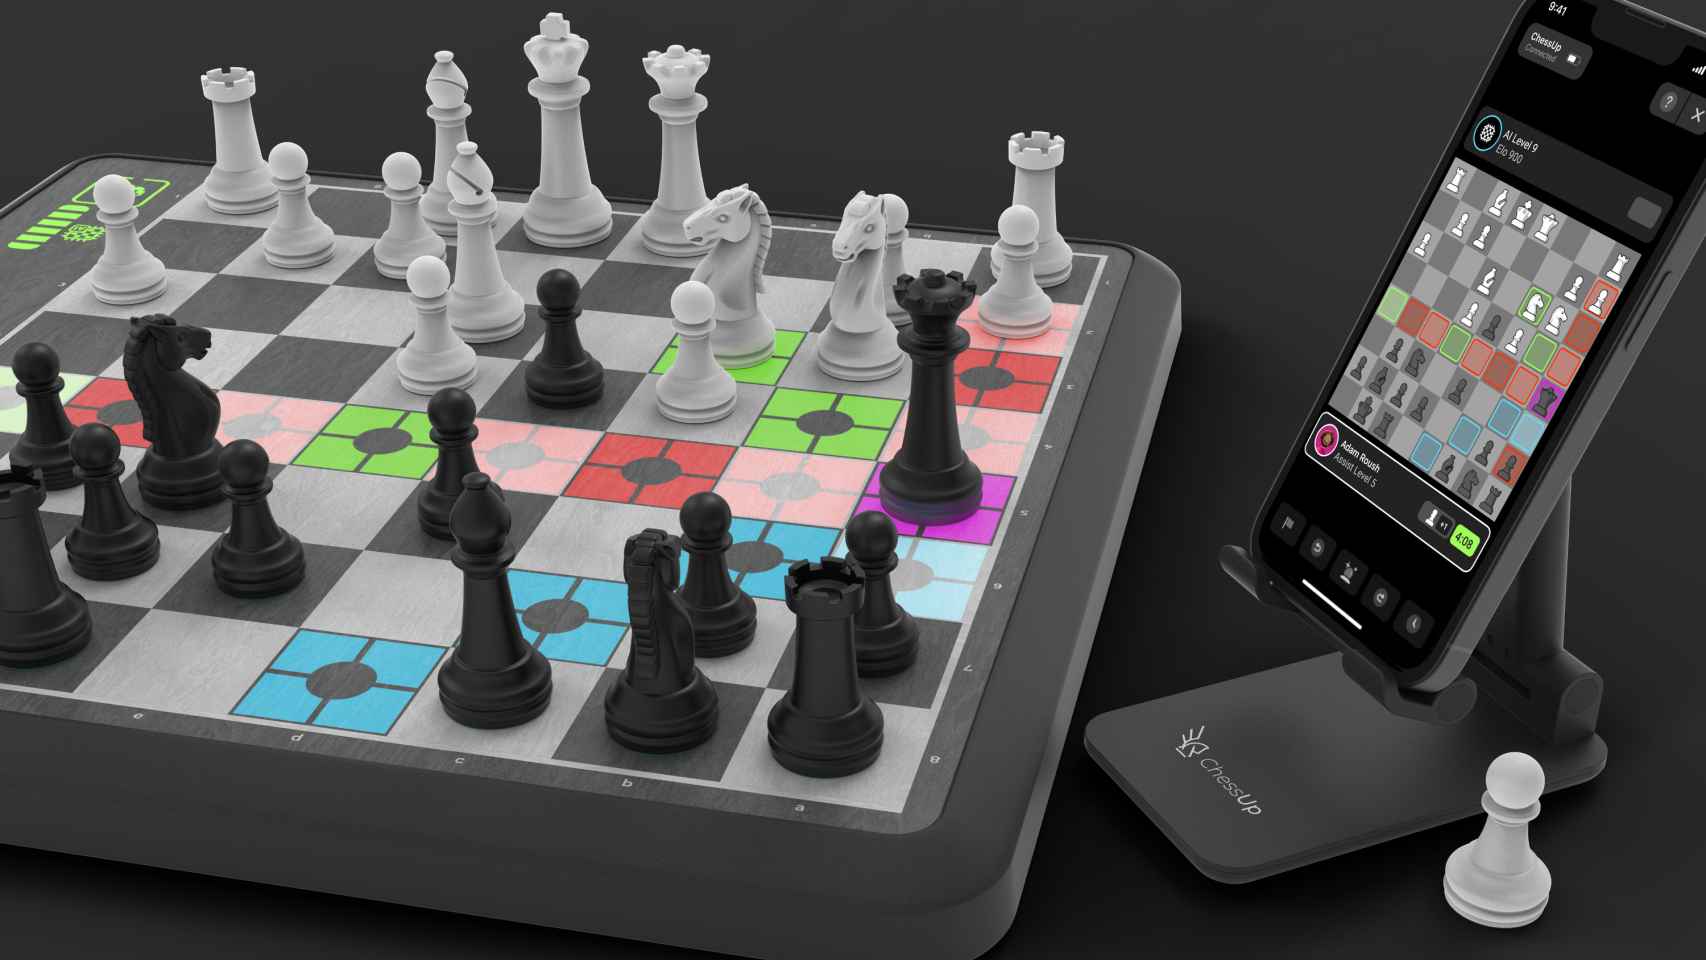 El tablero de ajedrez - Smartick